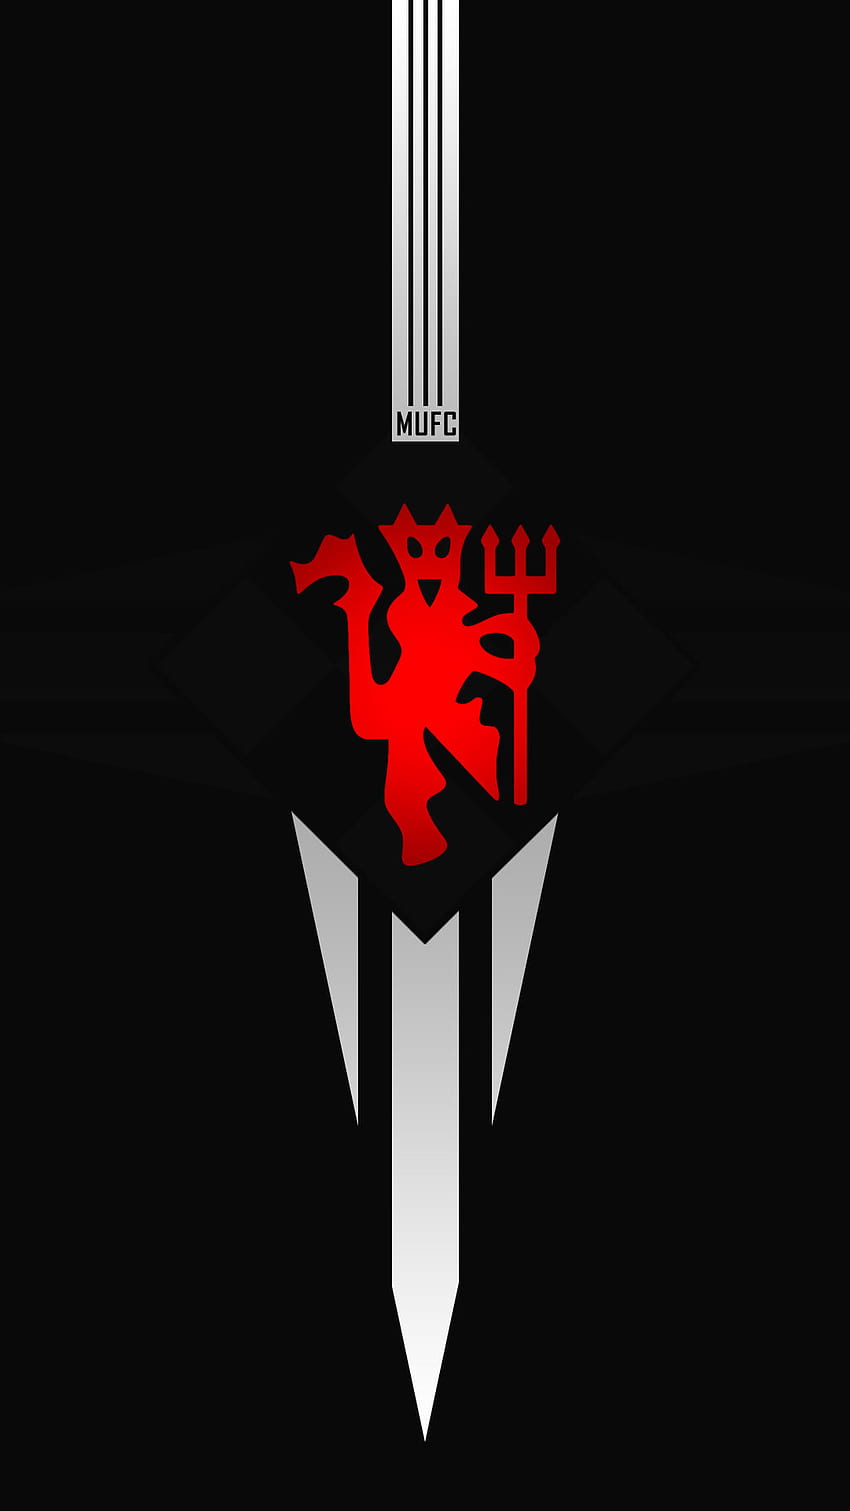 Logotipo de Man United para móviles iPhone y Android - Man Utd Core, Manchester United fondo de pantalla del teléfono